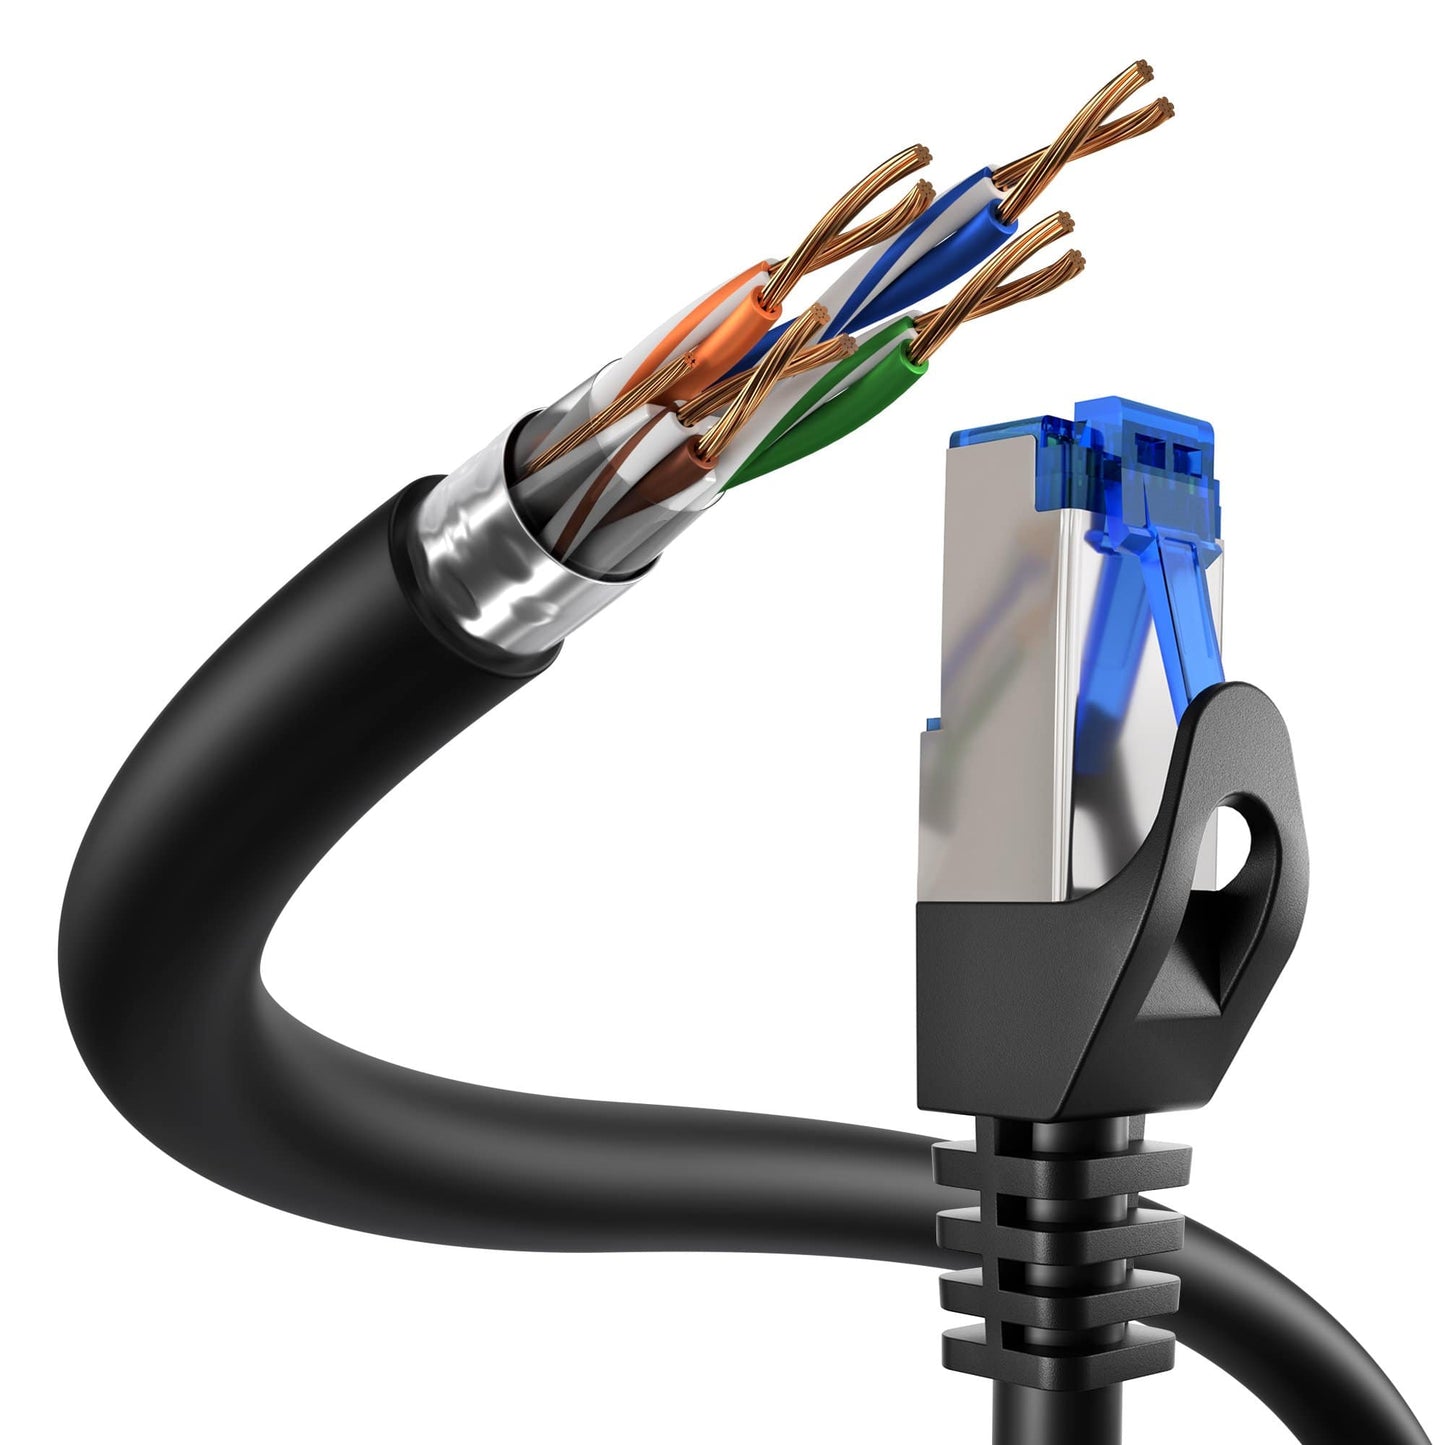 Cat 6 câble Ethernet F/UTP, idéal pour les réseaux Gigabit/LAN